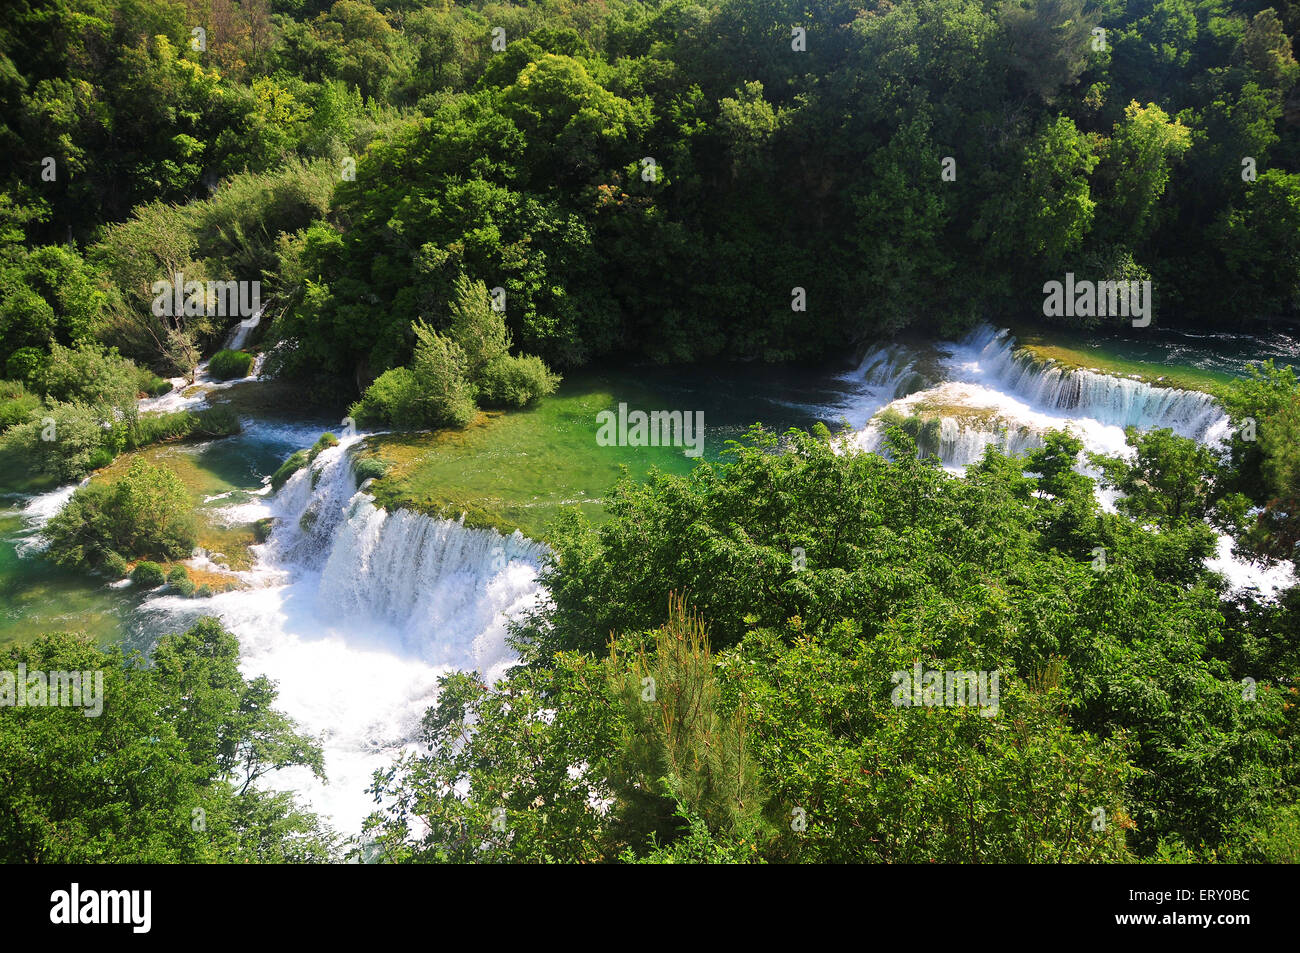 Krka valley immagini e fotografie stock ad alta risoluzione - Alamy